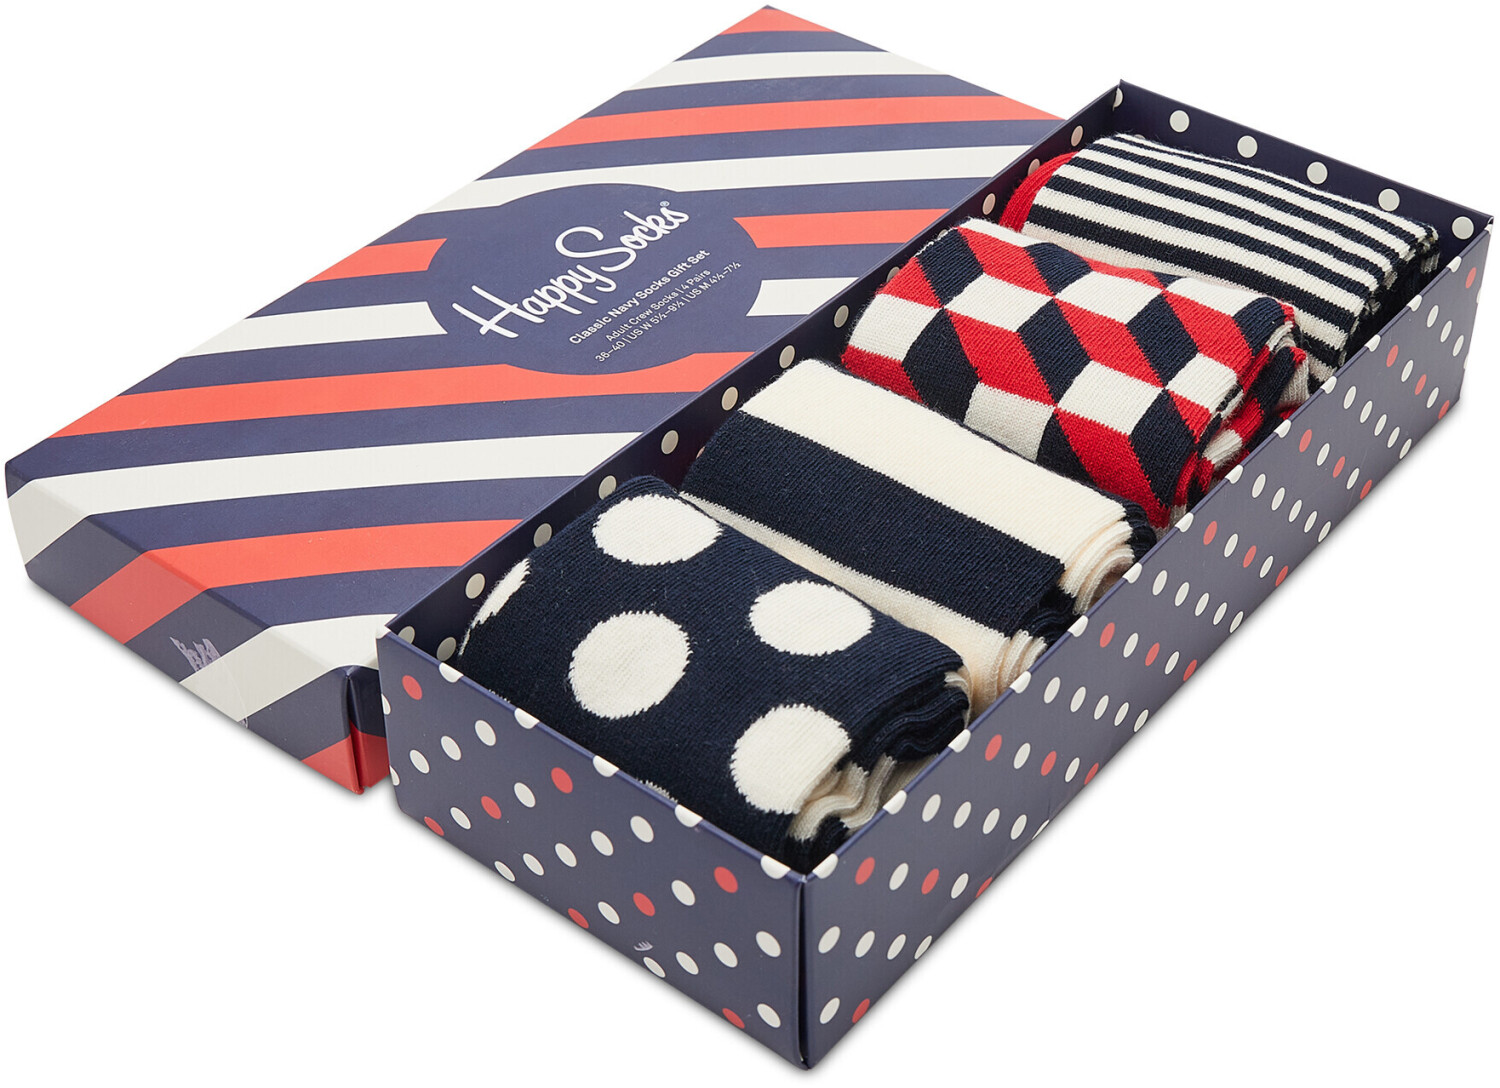 Happy Socks 4-Pack Classic Navy Socks Gift Set (XBDO09-6002) ab 27,99 € |  Preisvergleich bei